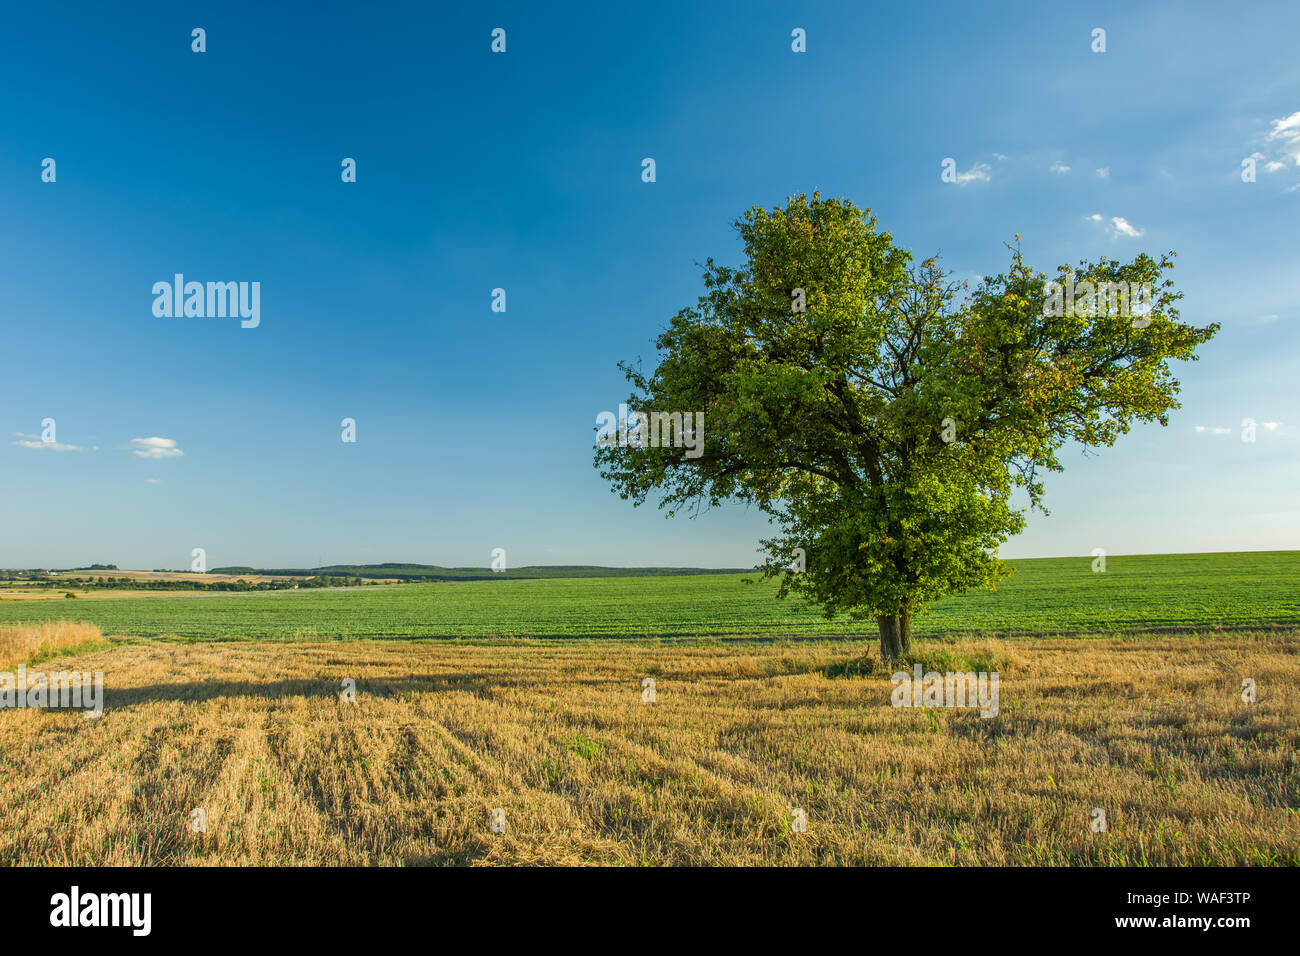 Lonely großer Laubbaum wächst auf Stoppeln Feld, Horizon und blauer Himmel. Staw, Polen Stockfoto